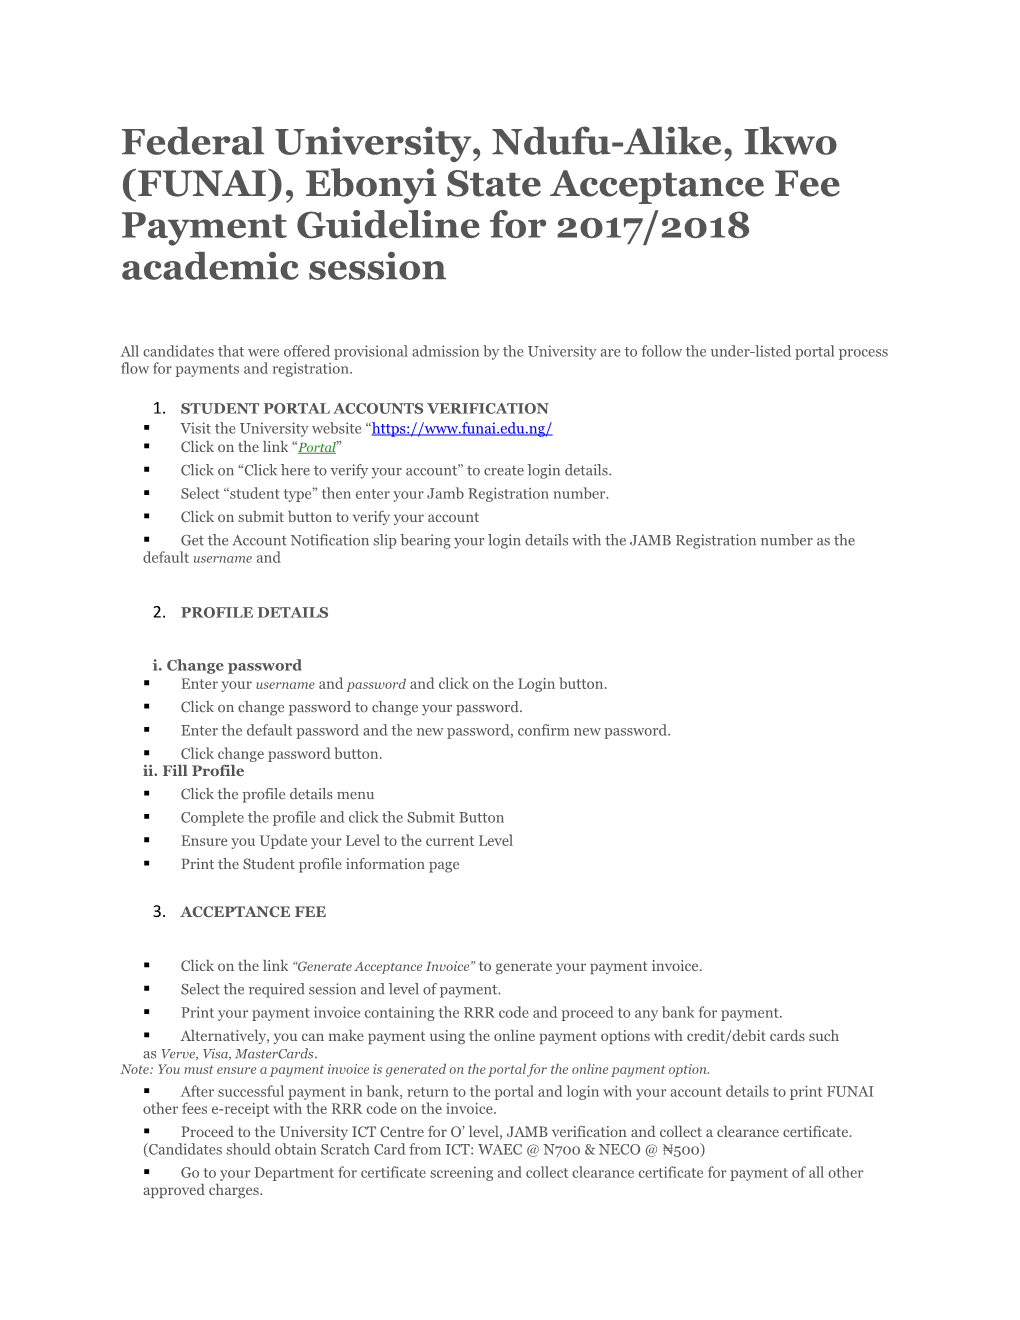 Federal University, Ndufu-Alike, Ikwo (FUNAI), Ebonyi State Acceptance Fee Payment Guideline